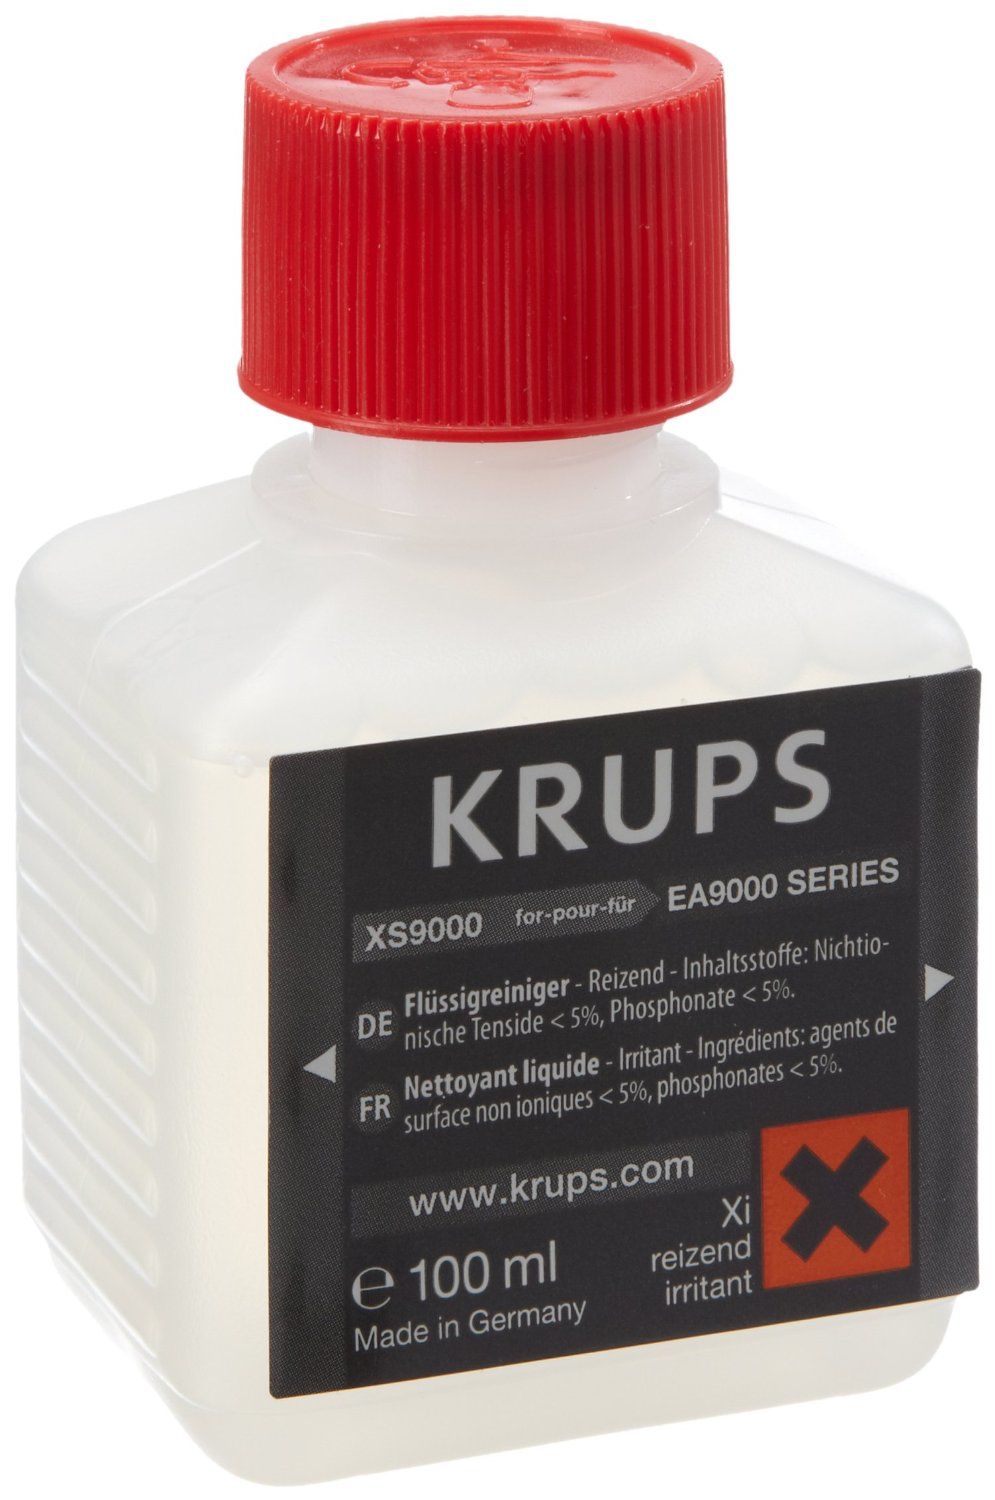 Krups XS 9000 - Reinigungslösung - für Kaffeemaschine